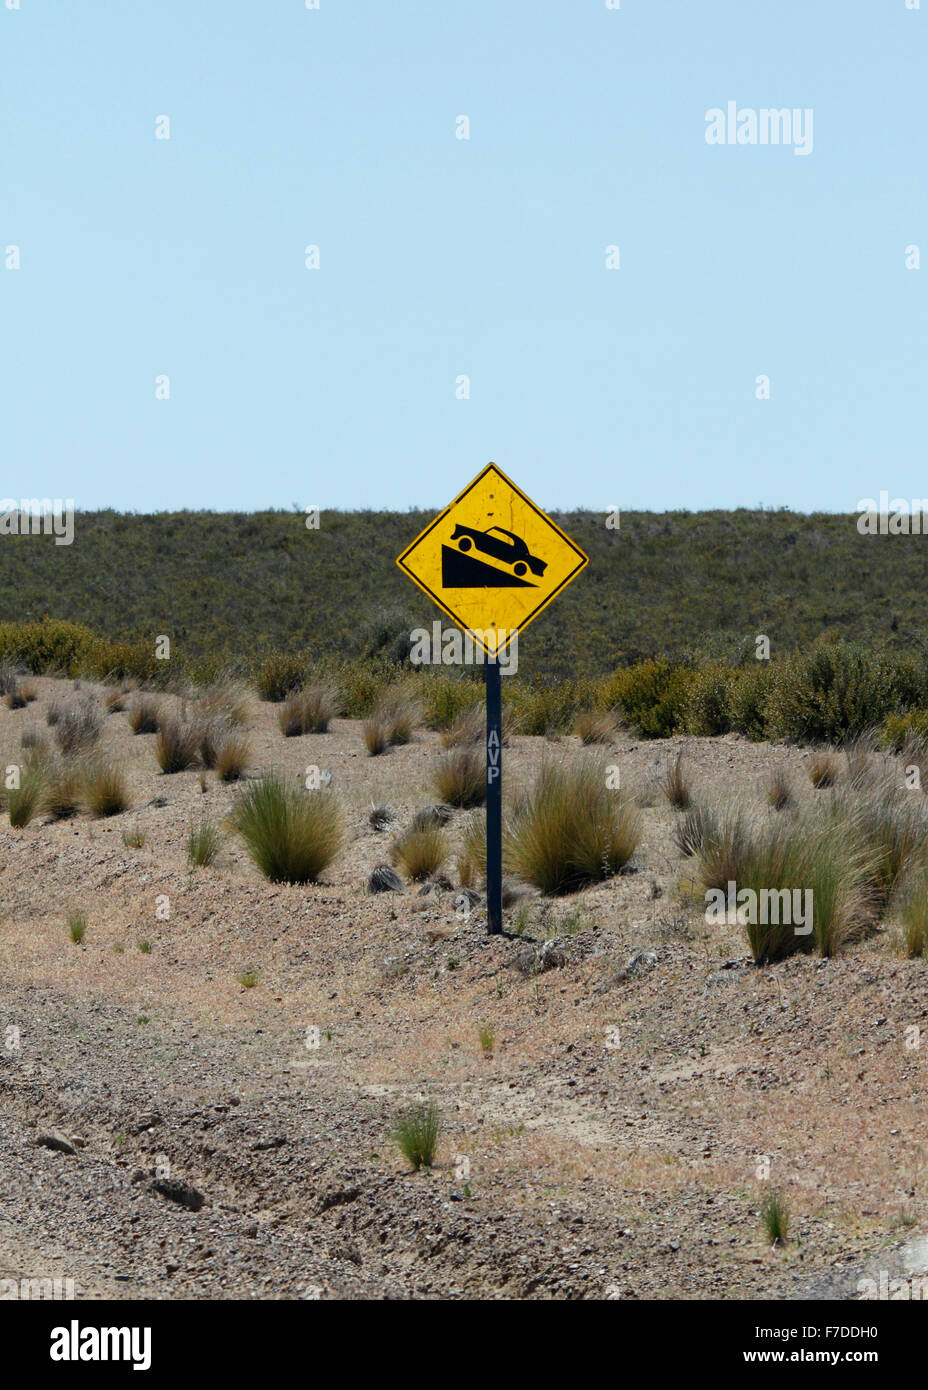 Gradient Zeichen auf eine gelbe rautenförmige Zeichen. Auto, einen Hügel klettern. Stockfoto